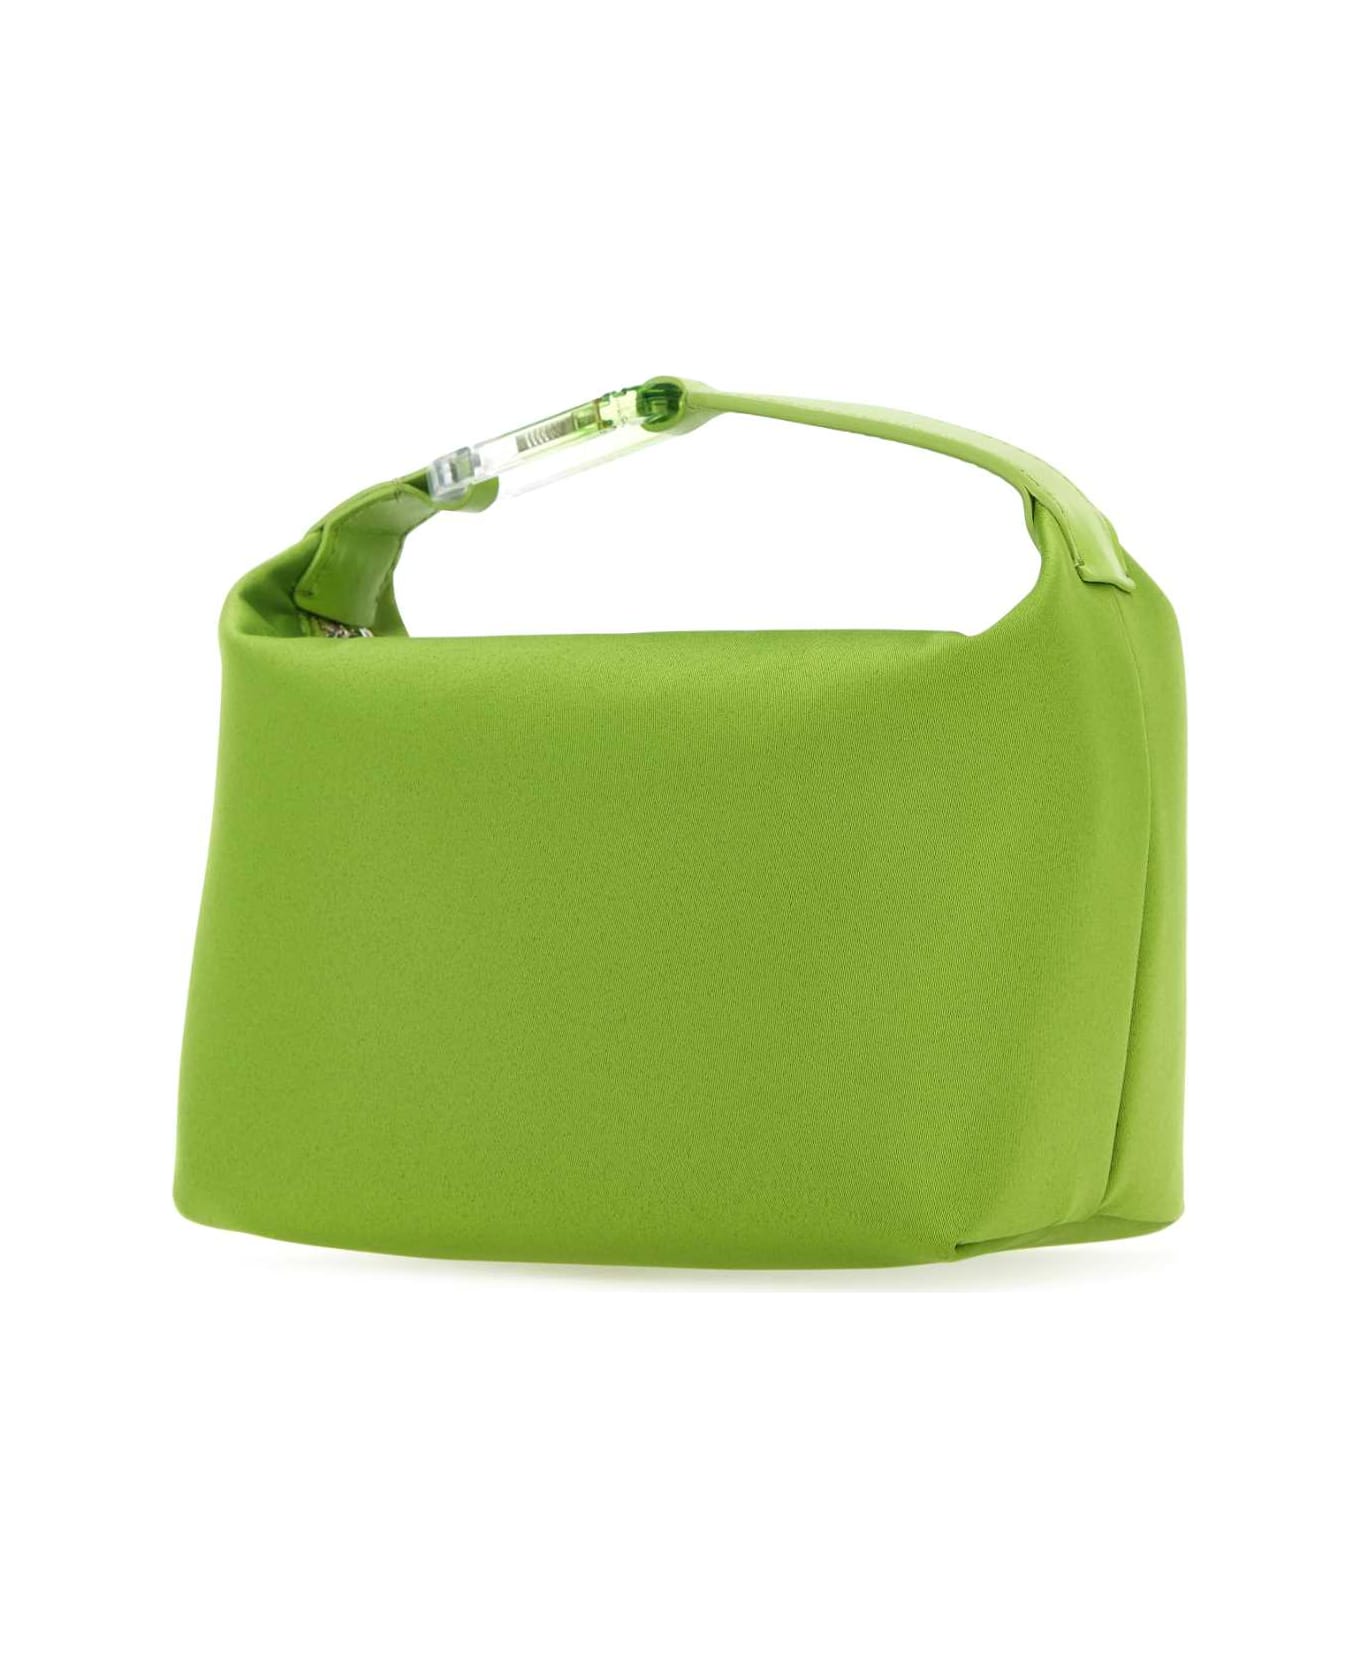 EÉRA Green Satin Moonbag Handbag - GREEN トートバッグ